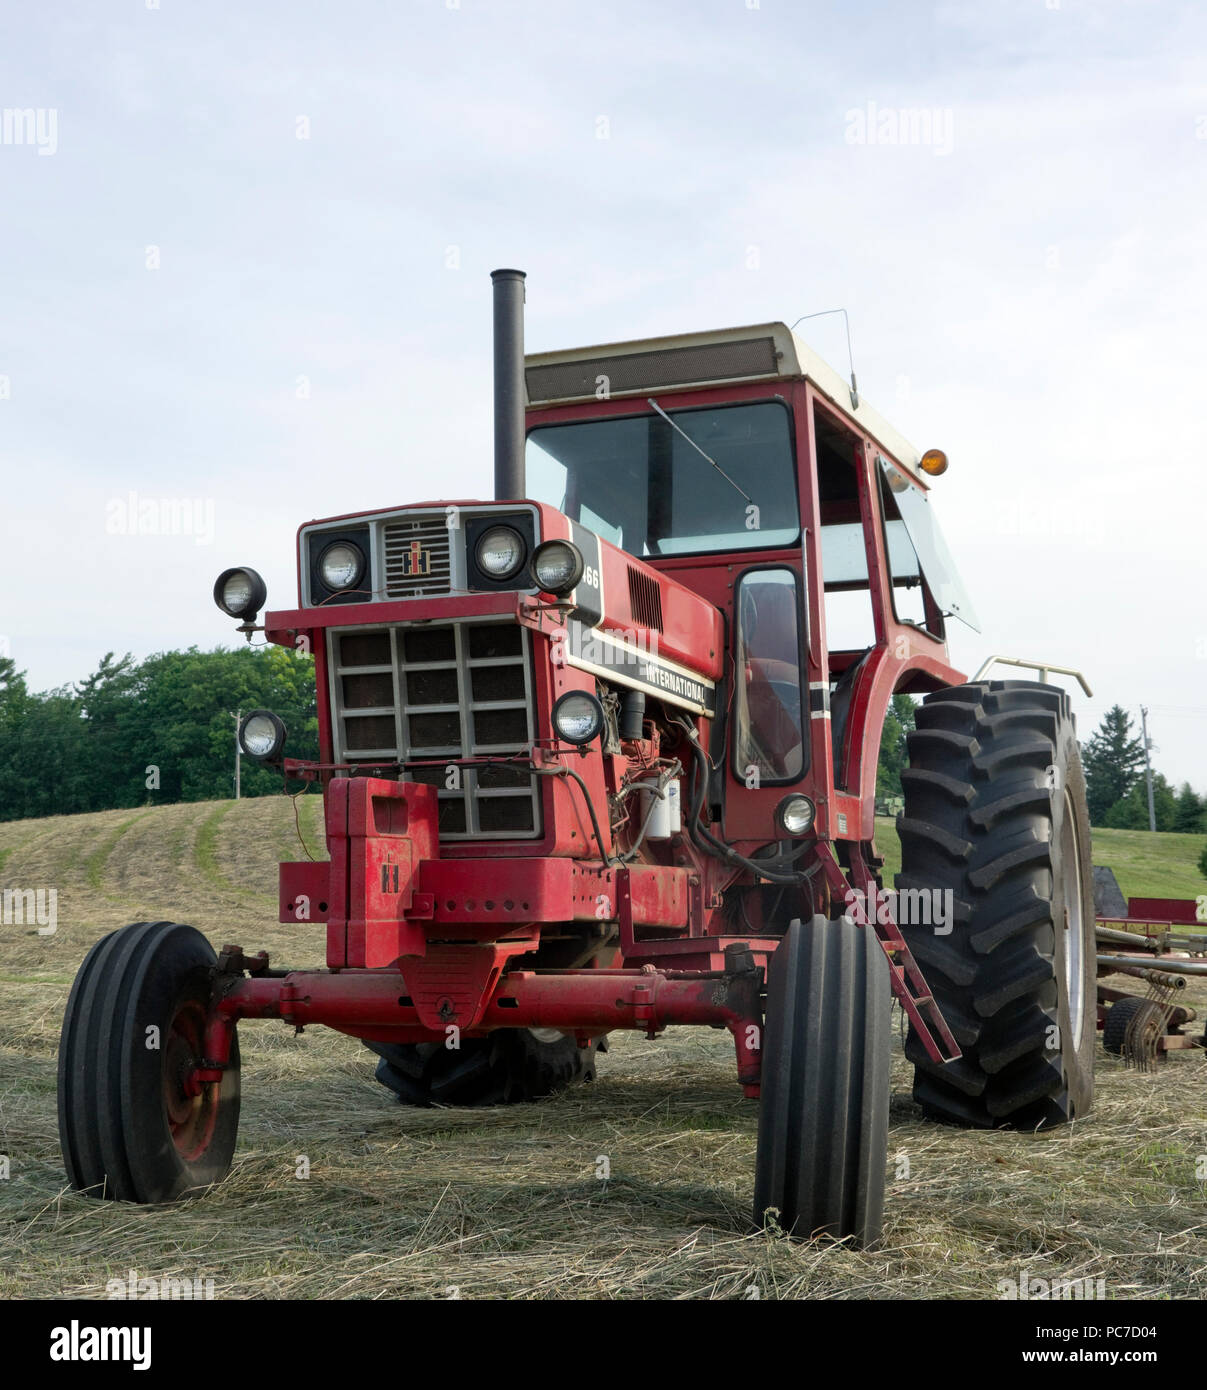 International Harvester model 1466 diesel Row Crop tractor in hay field Stock Photo